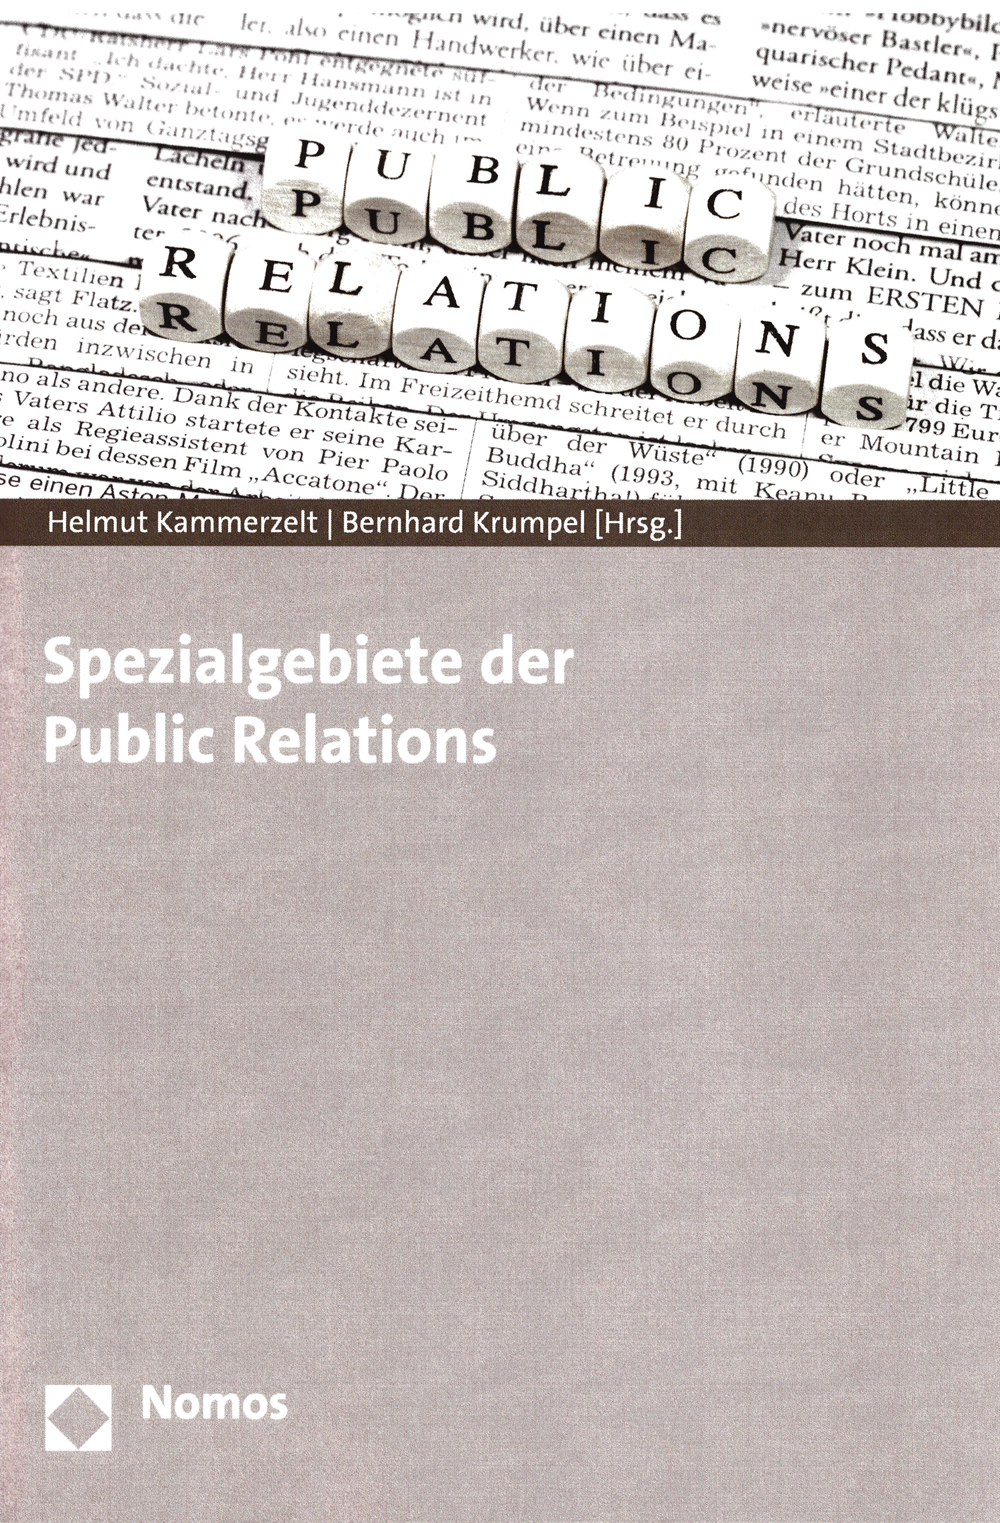 Neues Fachbuch schafft Übersicht über ausgewählte Themenbereiche der Öffentlichkeitsarbeit